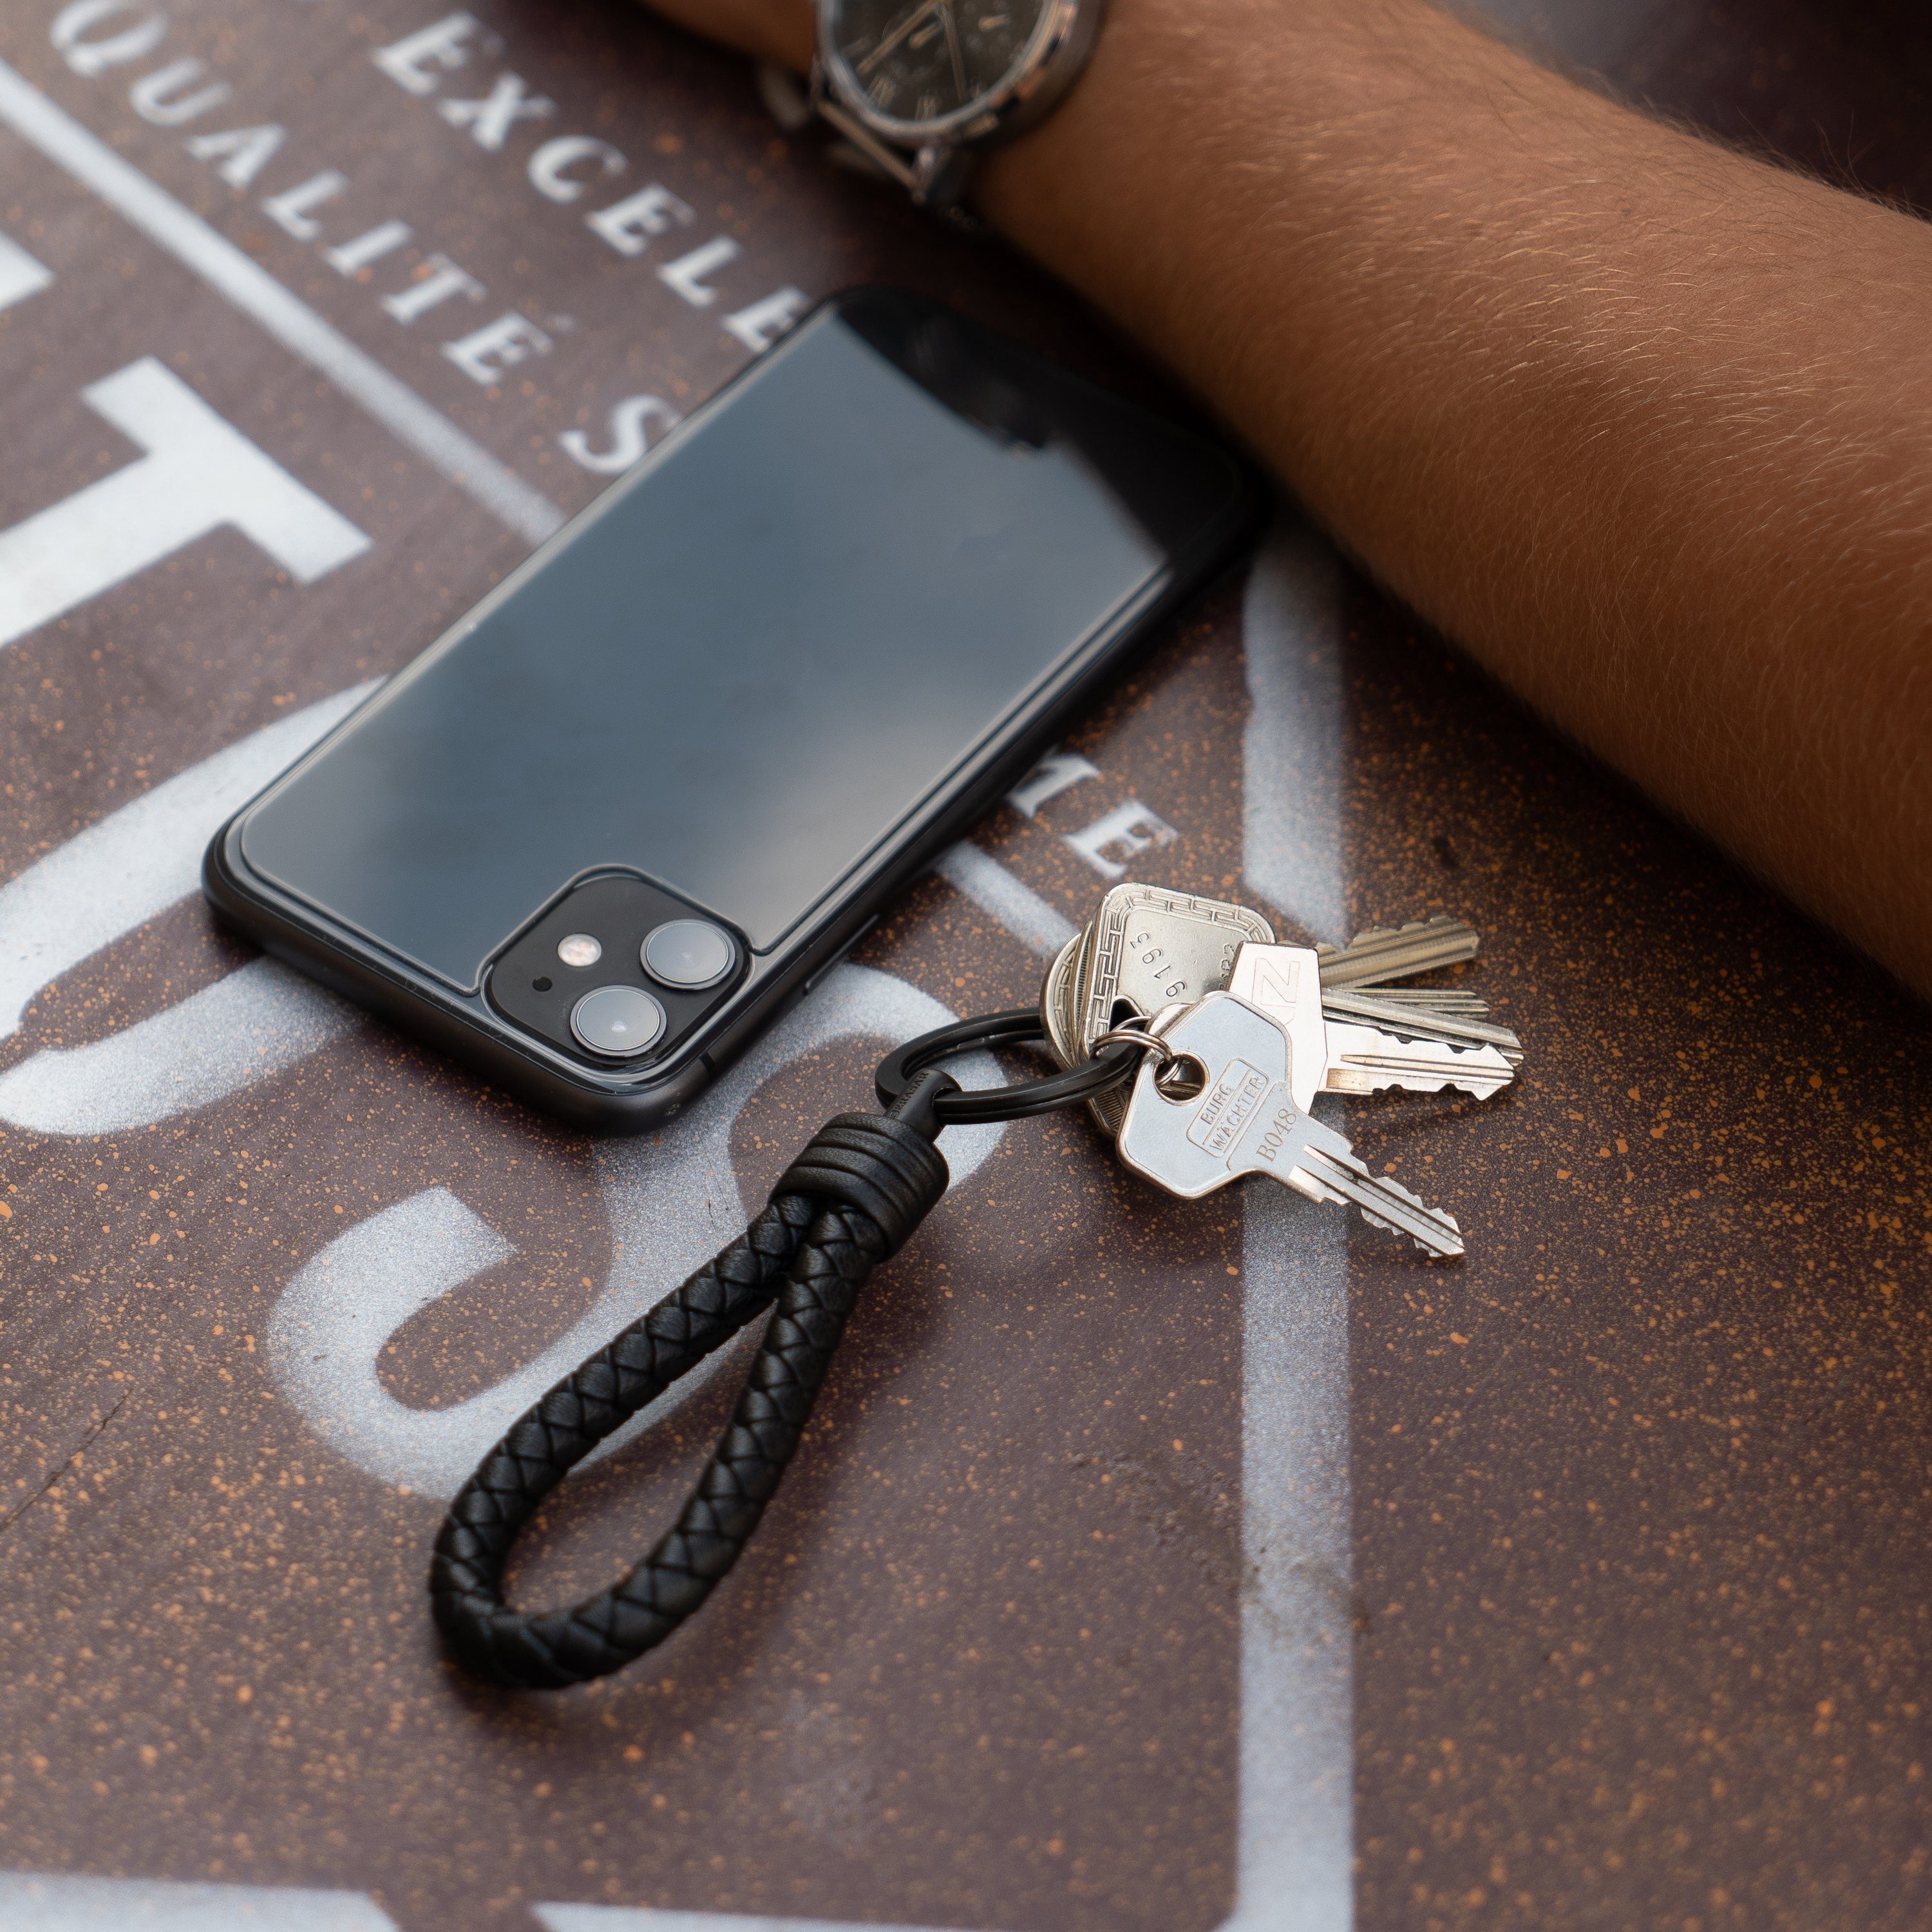 SERASAR Schlüsselanhänger (1-tlg), Zusatzringe Schwarz Schlüssel für "Strong" kleine Schlüsselanhänger Leder